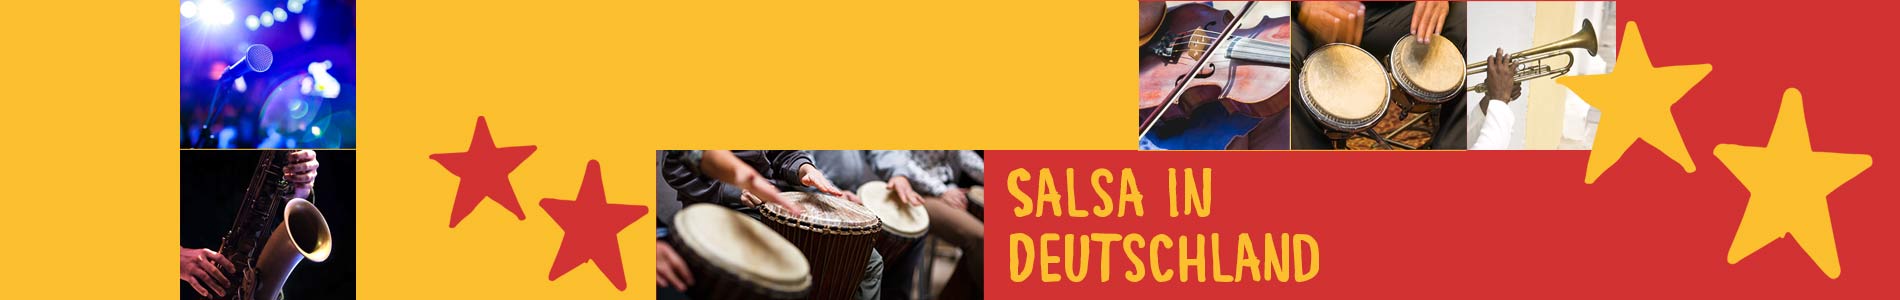 Salsa in Brunn – Salsa lernen und tanzen, Tanzkurse, Partys, Veranstaltungen